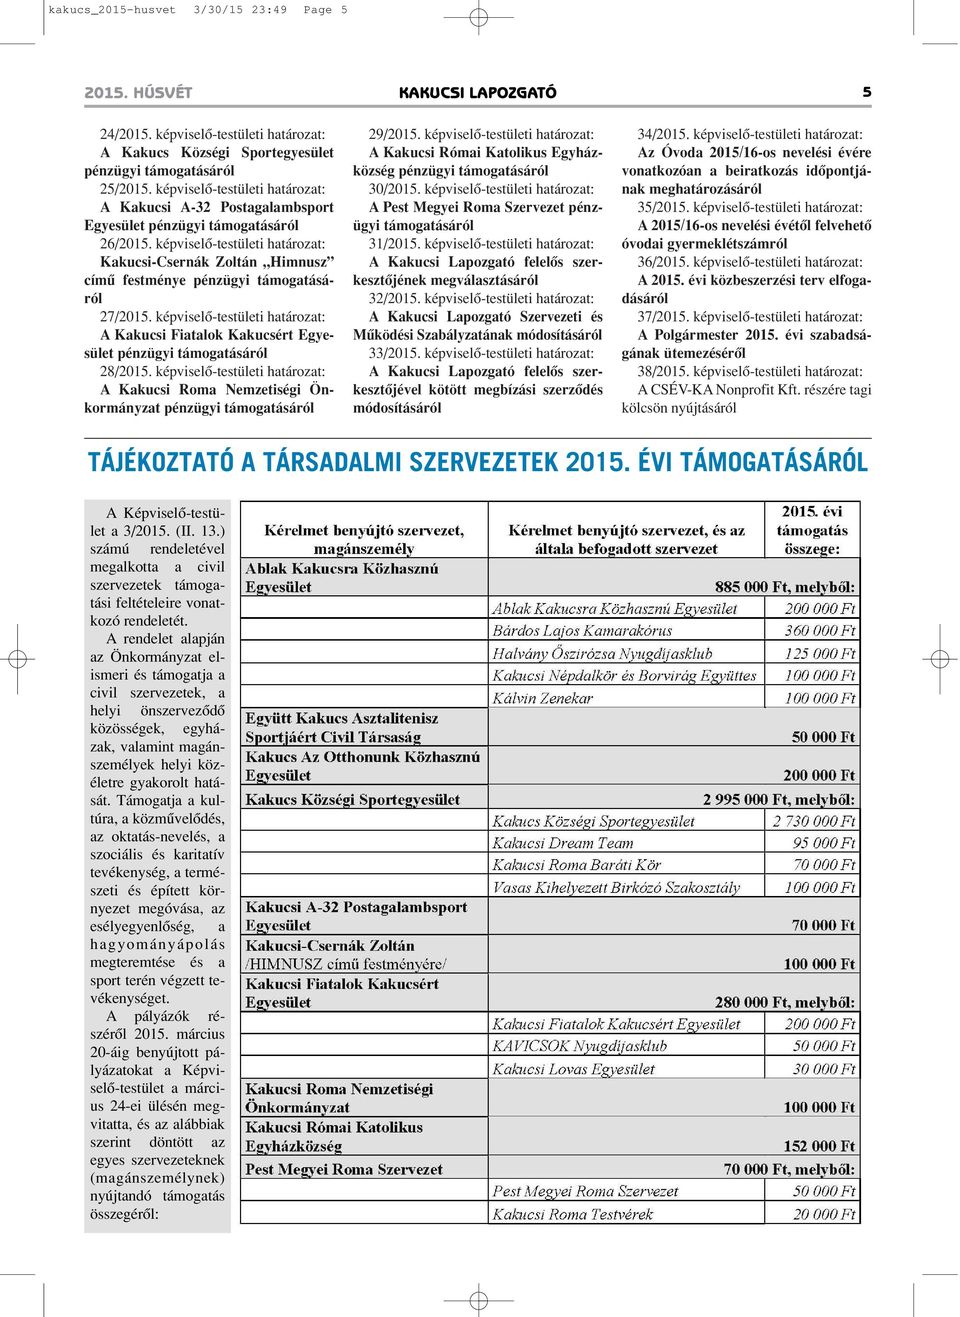 képviselô-testületi határozat: Kakucsi-Csernák Zoltán Himnusz címû festménye pénzügyi támogatásáról 27/2015.